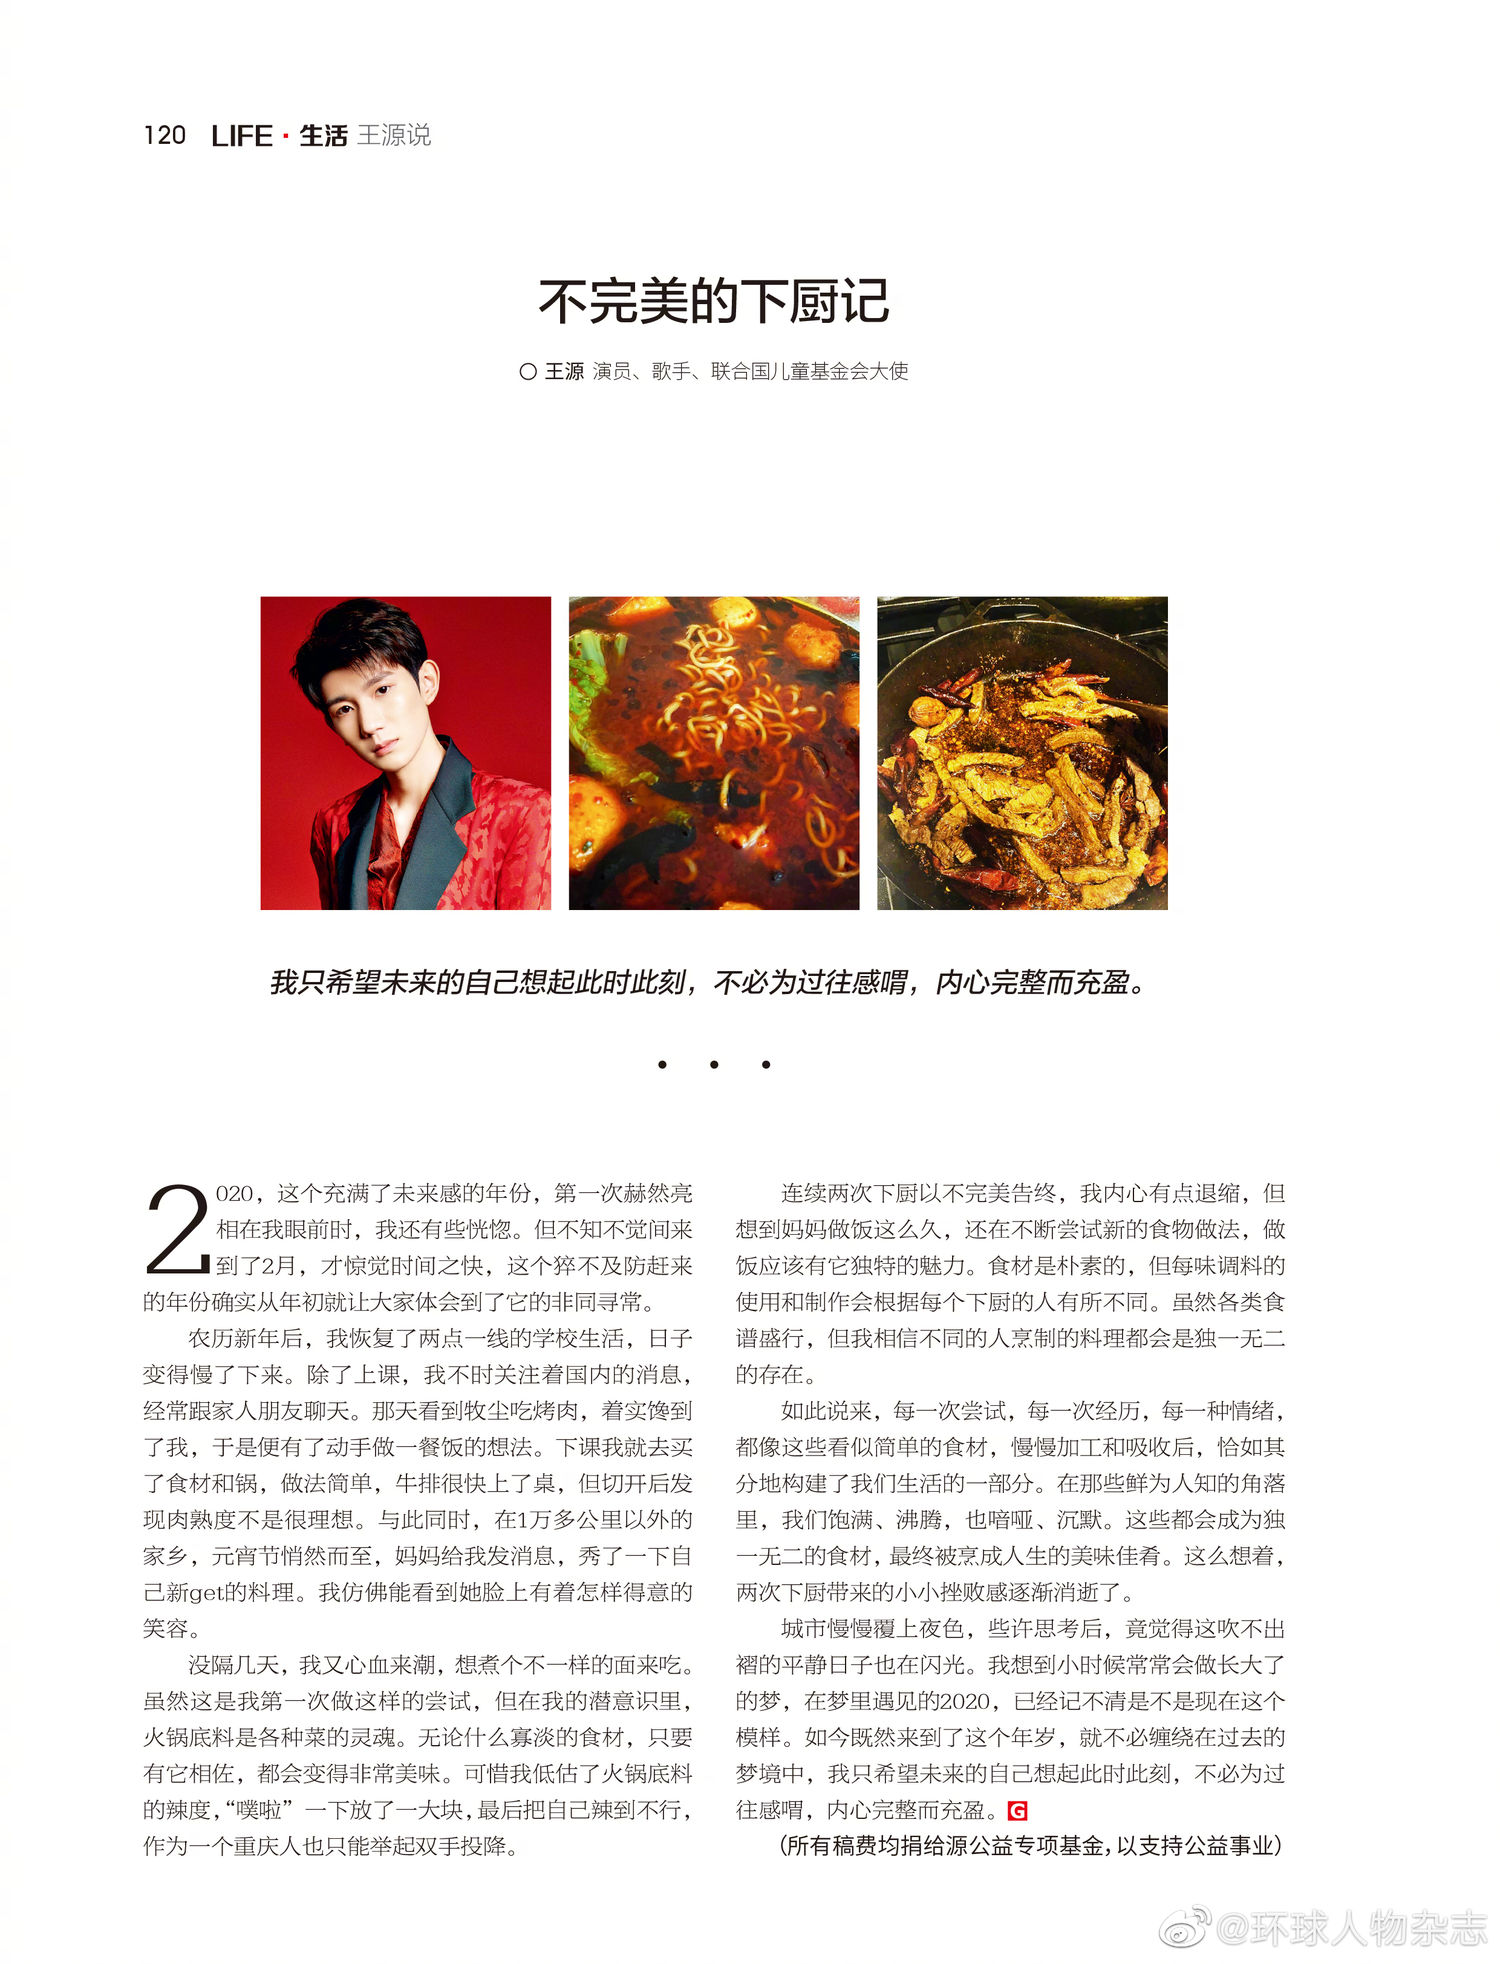 王源新闻200218新一期环球人物专栏王源说不完美的下厨记